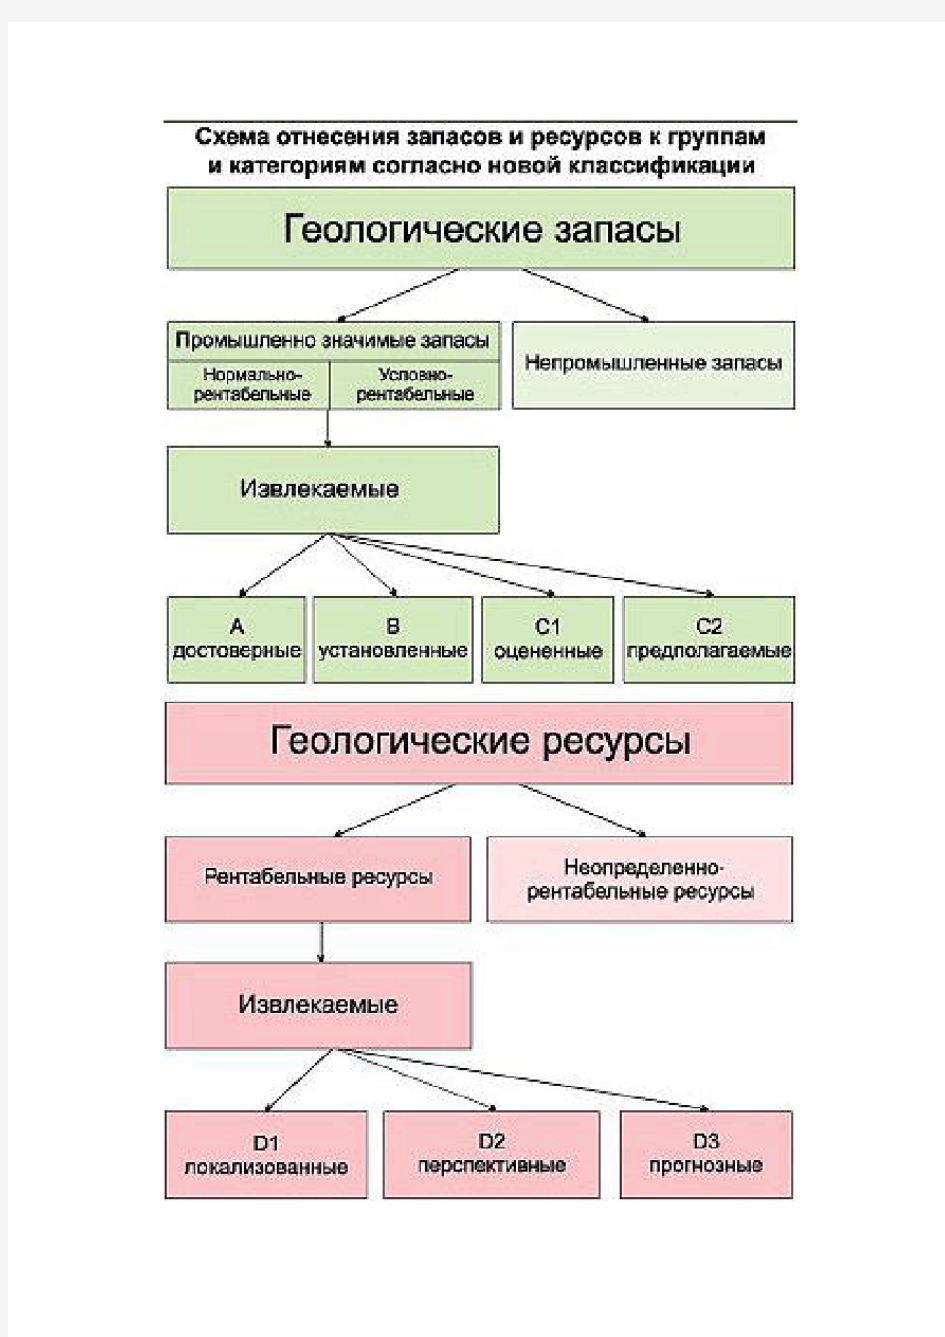 俄罗斯新石油储量分级表